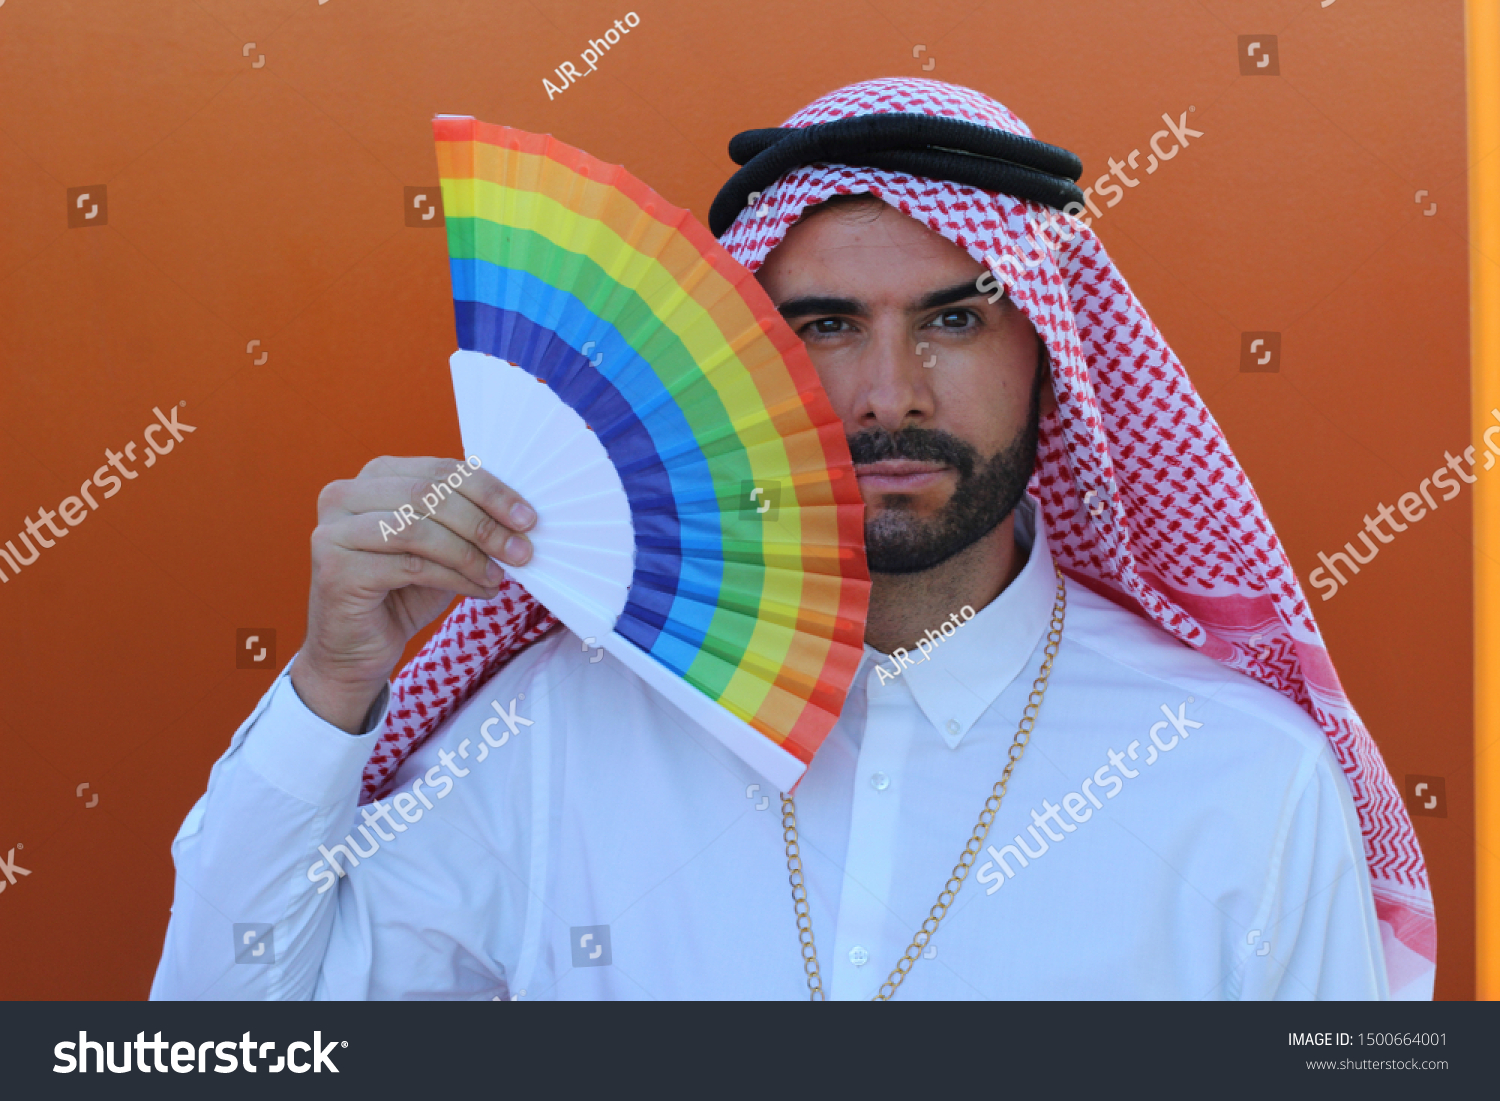 Arabgay